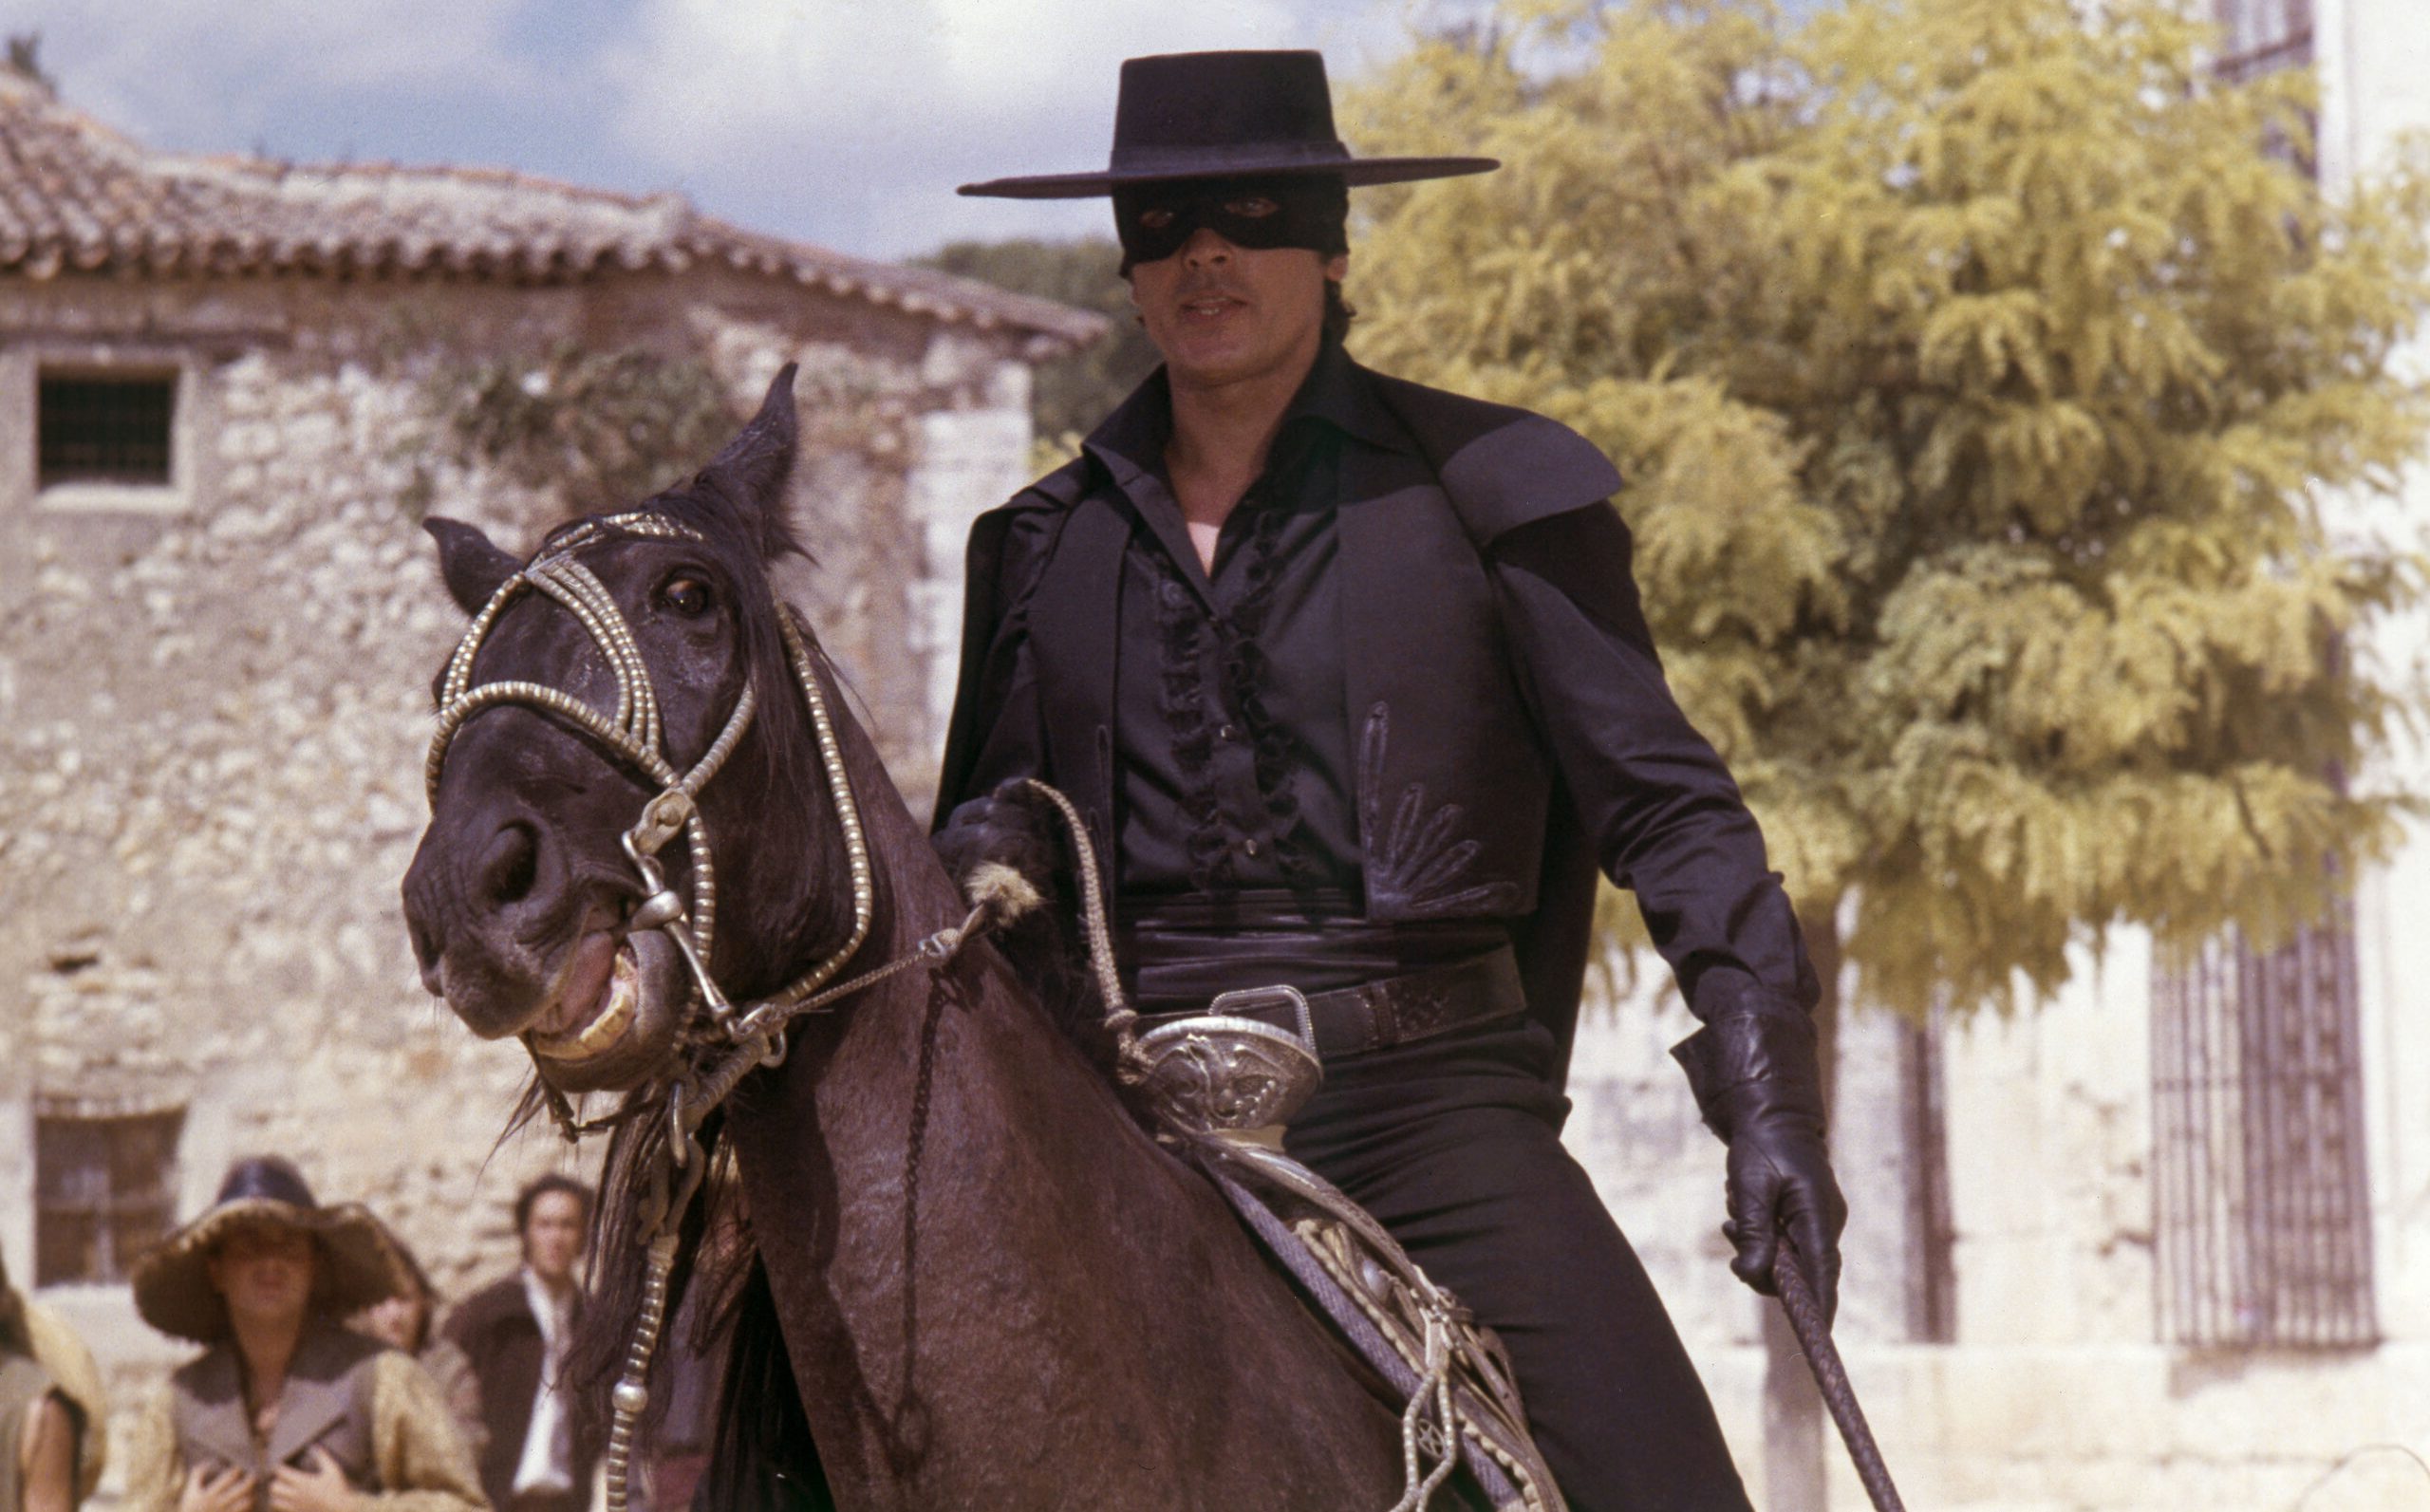 دانلود فیلم Zorro 1975